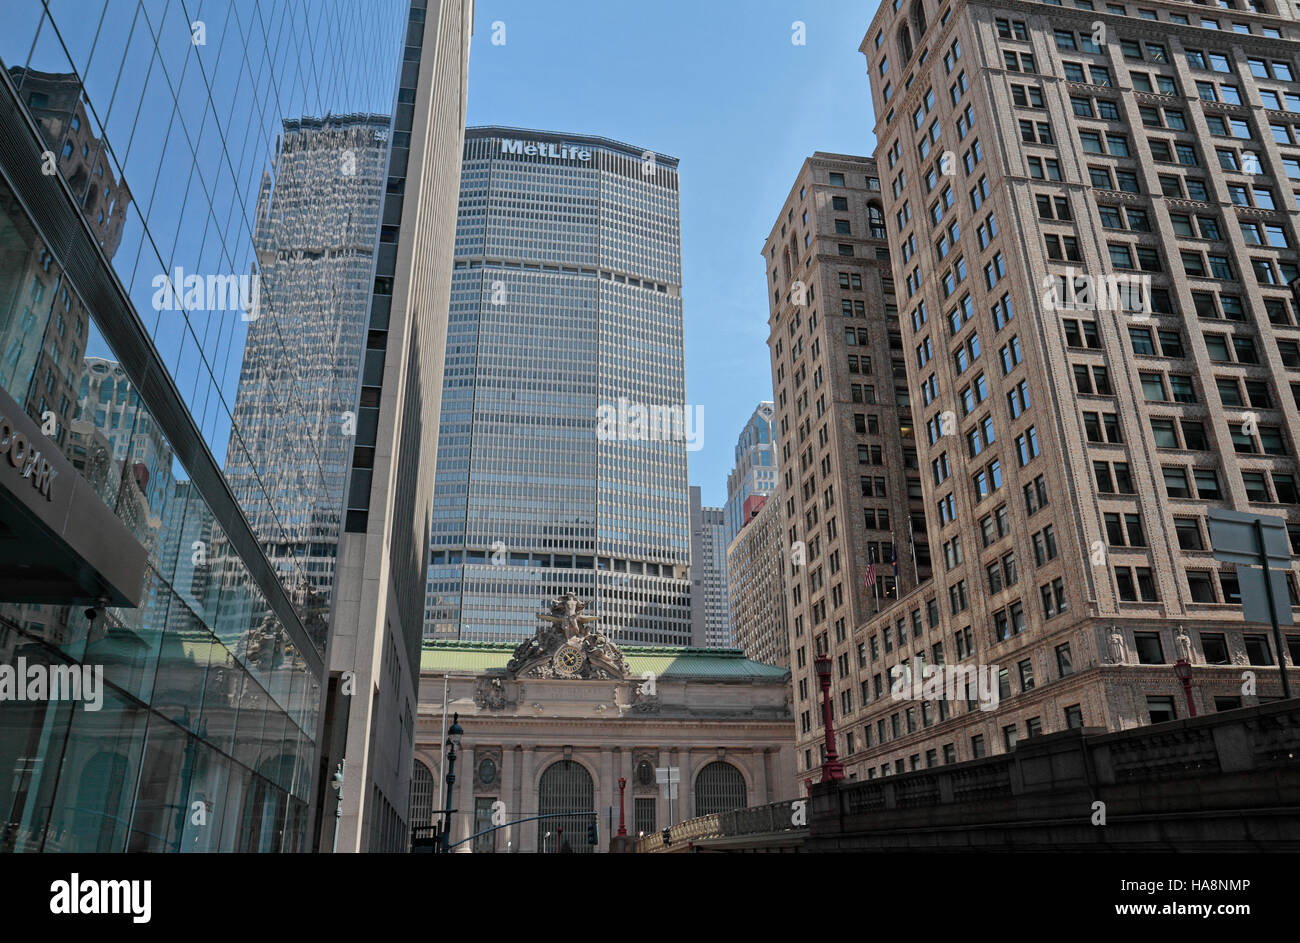 Le MetLife Building s'élevant au-dessus de Grand Central Terminal sur Park Avenue, Manhattan, New York, United States. Banque D'Images